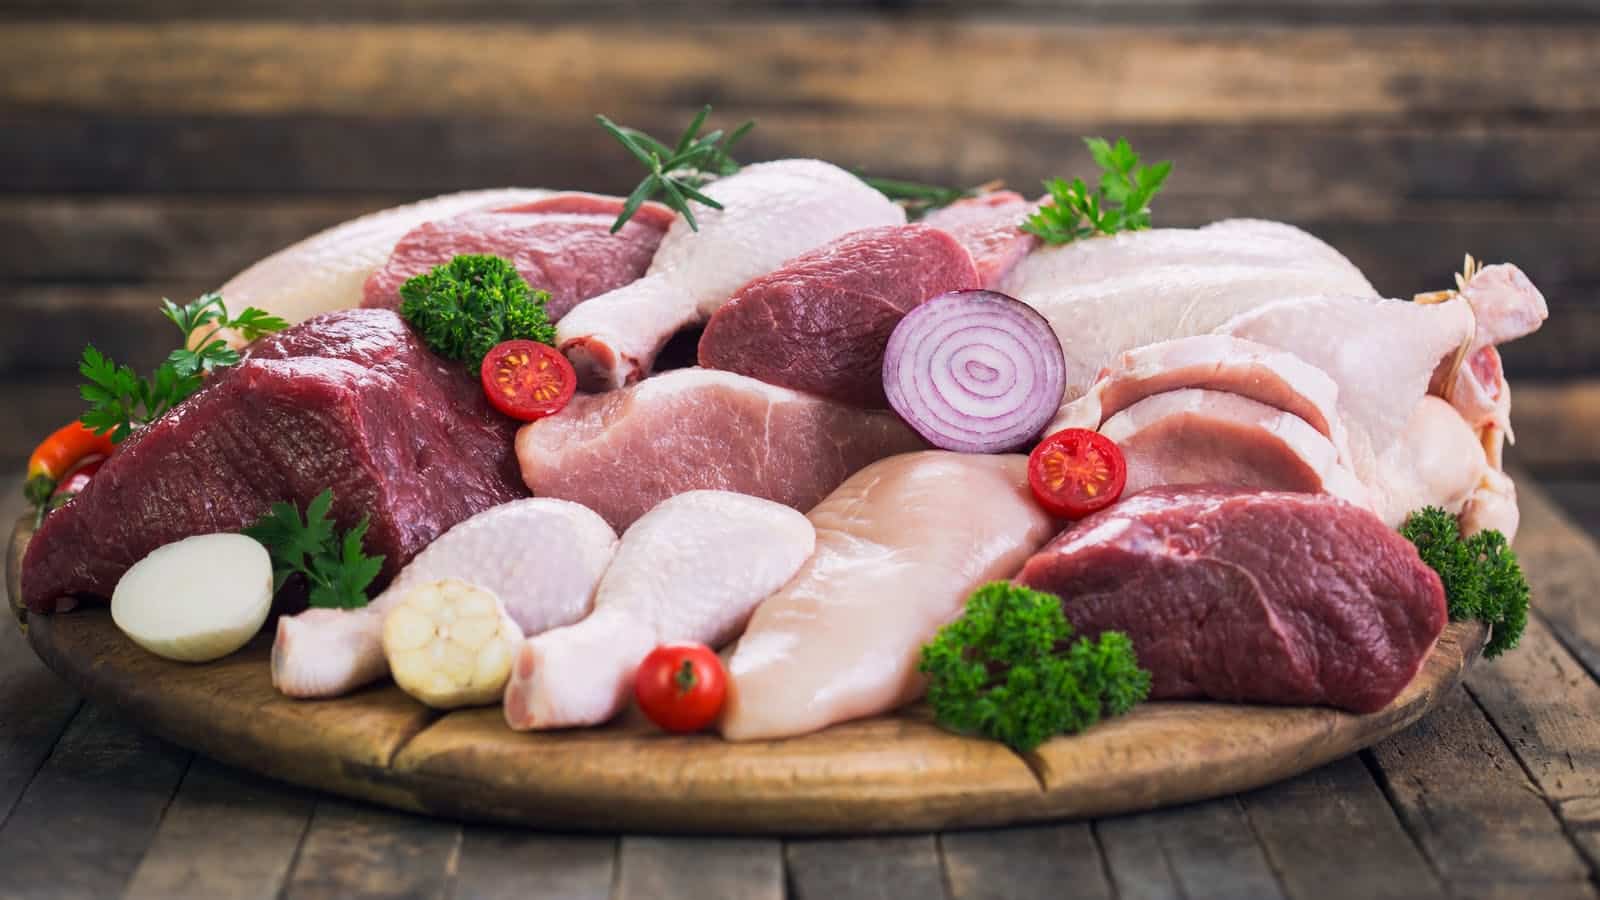 red and white meat اللحوم البيضاء أيضا ترفع مستويات الكوليسترول "الضار" في الدم مجلة نقطة العلمية